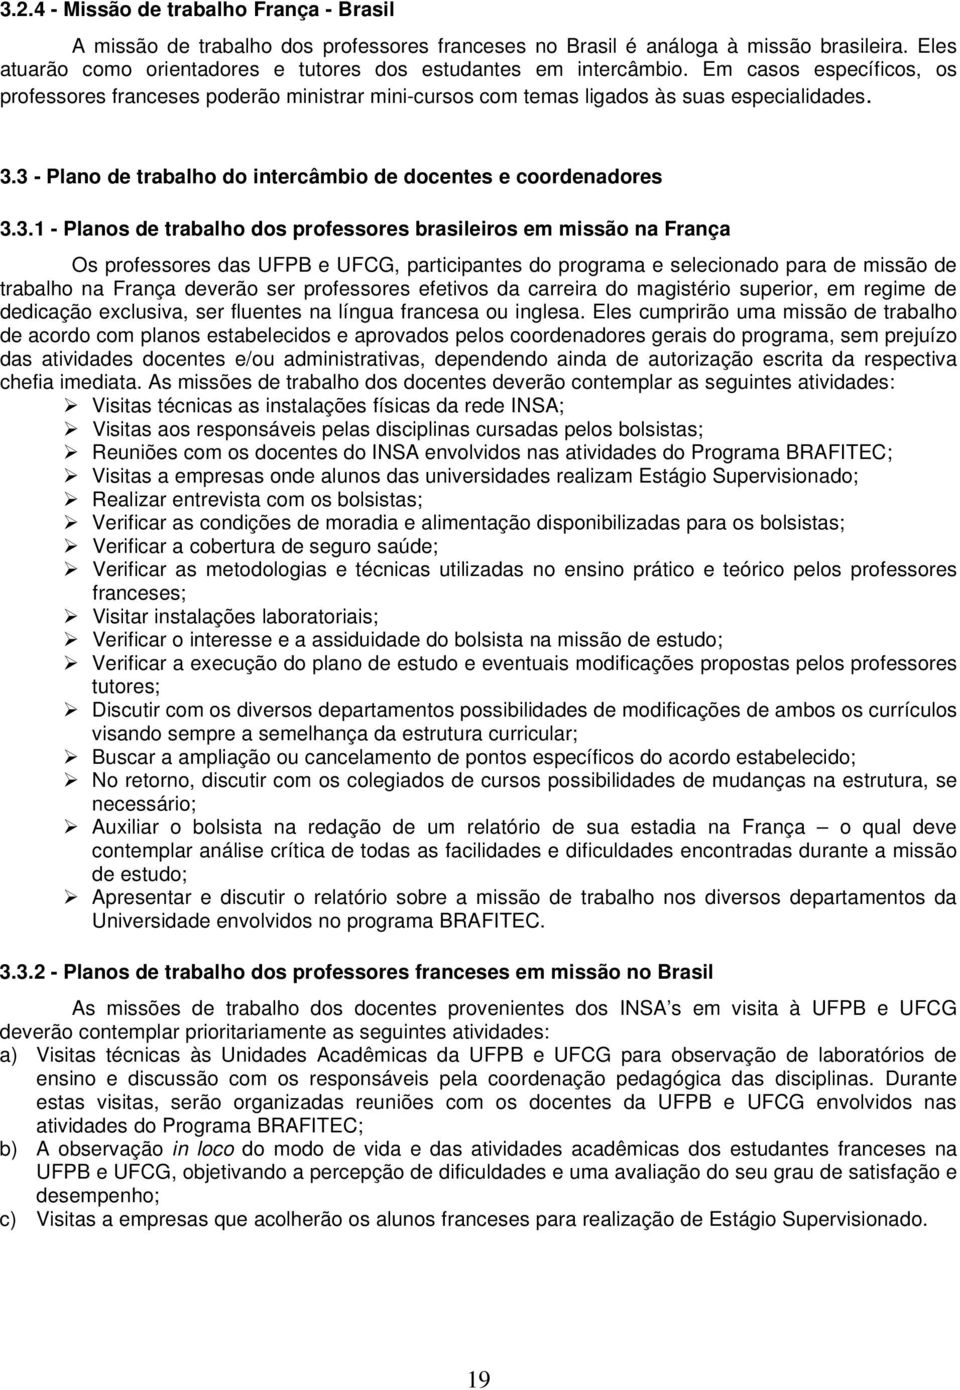 3 - Plano de trabalho do intercâmbio de docentes e coordenadores 3.3.1 - Planos de trabalho dos professores brasileiros em missão na França Os professores das UFPB e UFCG, participantes do programa e